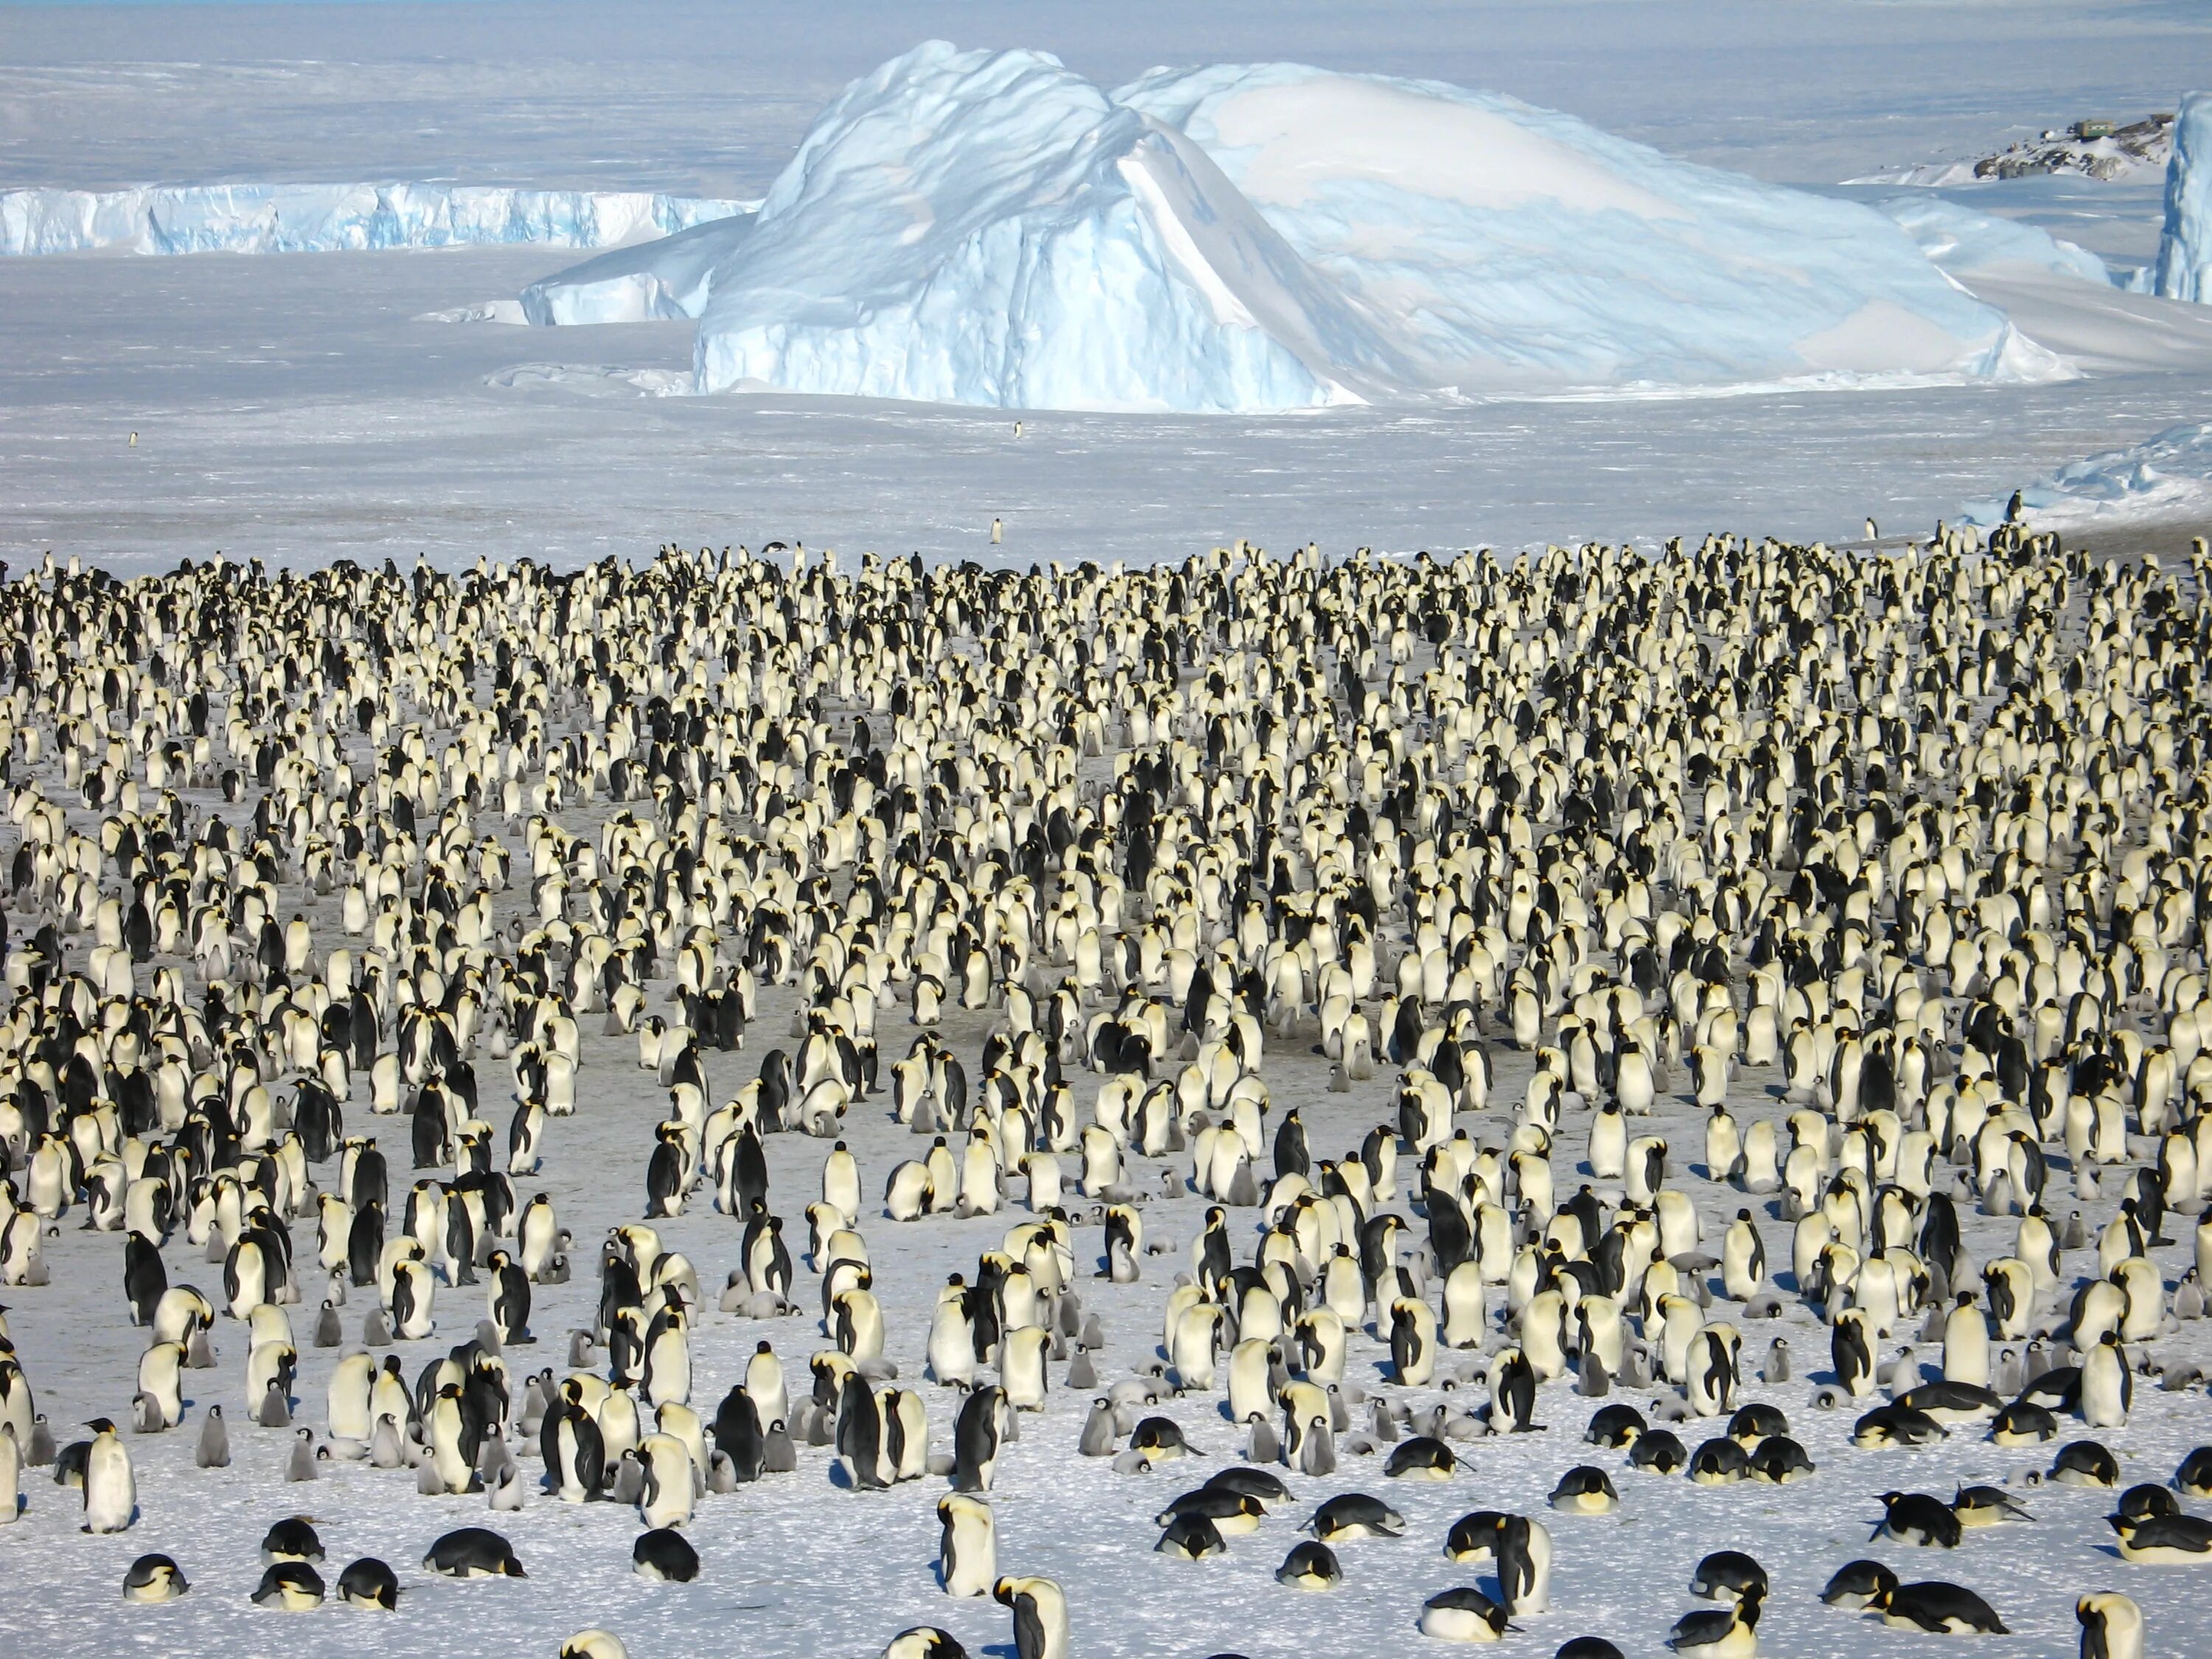 Императорский Пингвин в Антарктиде. Колония пингвинов в Антарктиде. Колония императорских пингвинов в Антарктиде. Стая пингвинов в Антарктиде. В середине 20 века антарктида для многих